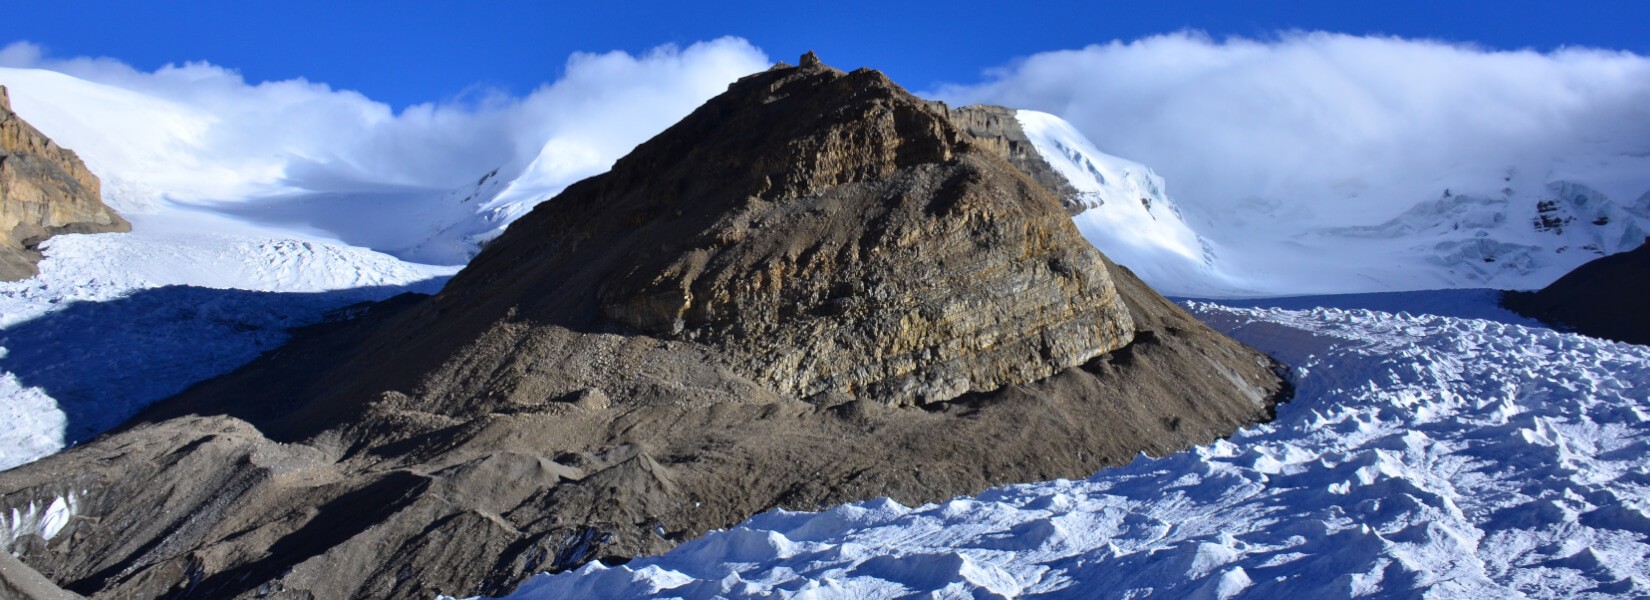 Saribung Trekking with Climbing | Himalayan Ecological Trekking